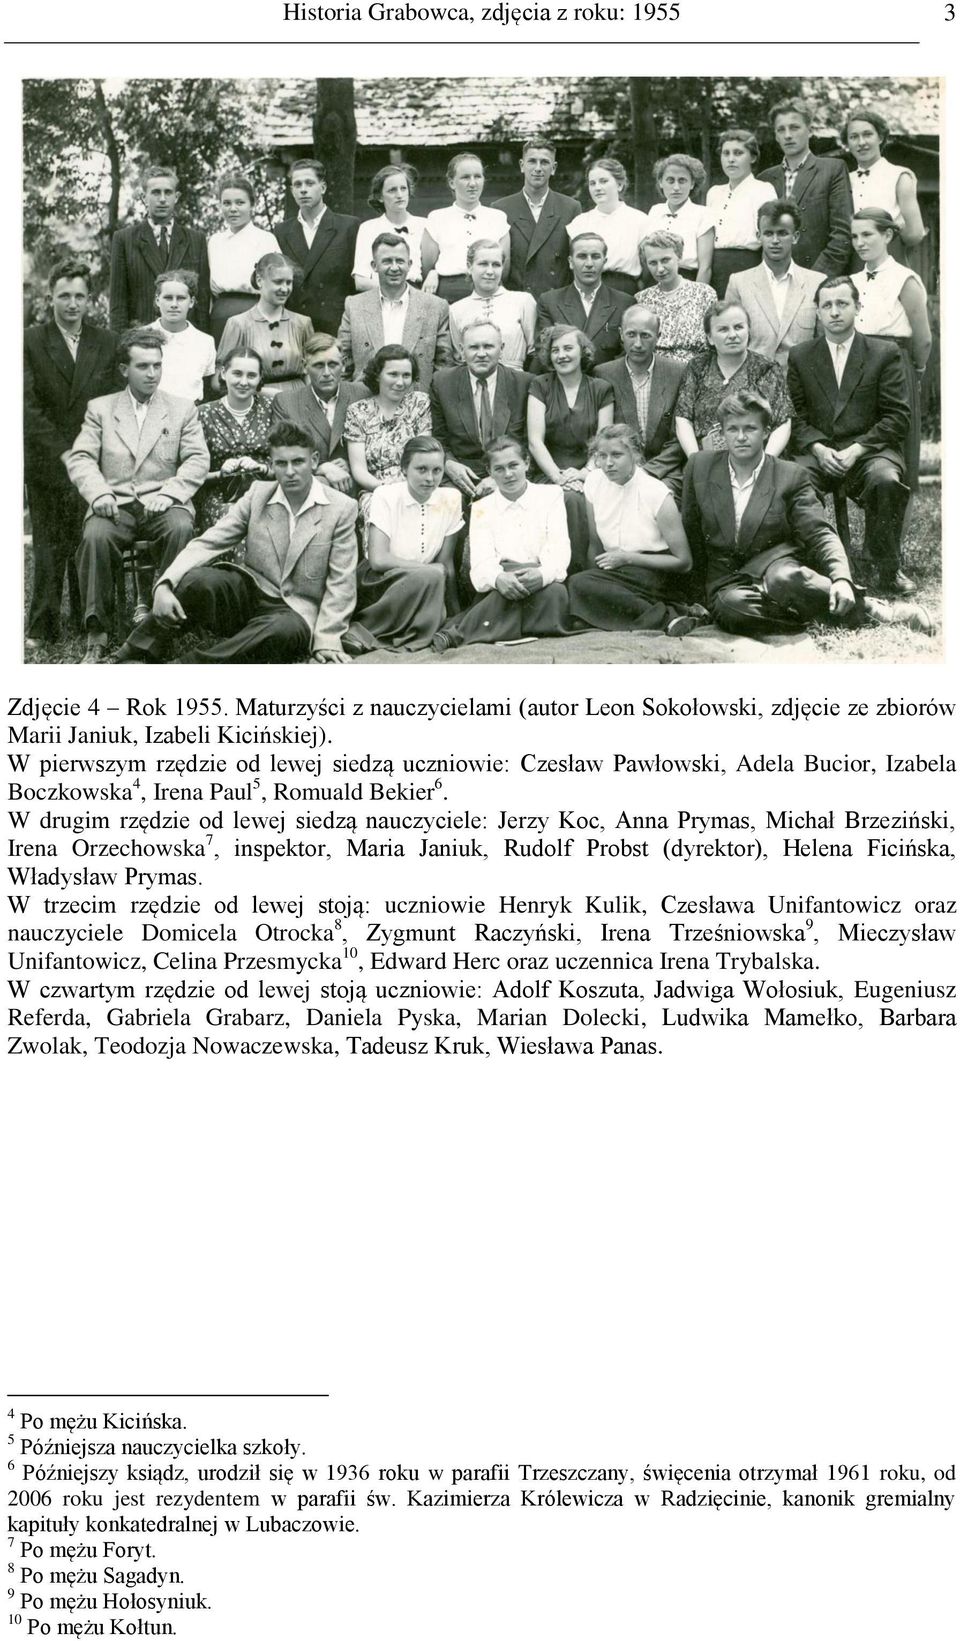 W drugim rzędzie od lewej siedzą nauczyciele: Jerzy Koc, Anna Prymas, Michał Brzeziński, Irena Orzechowska 7, inspektor, Maria Janiuk, Rudolf Probst (dyrektor), Helena Ficińska, Władysław Prymas.